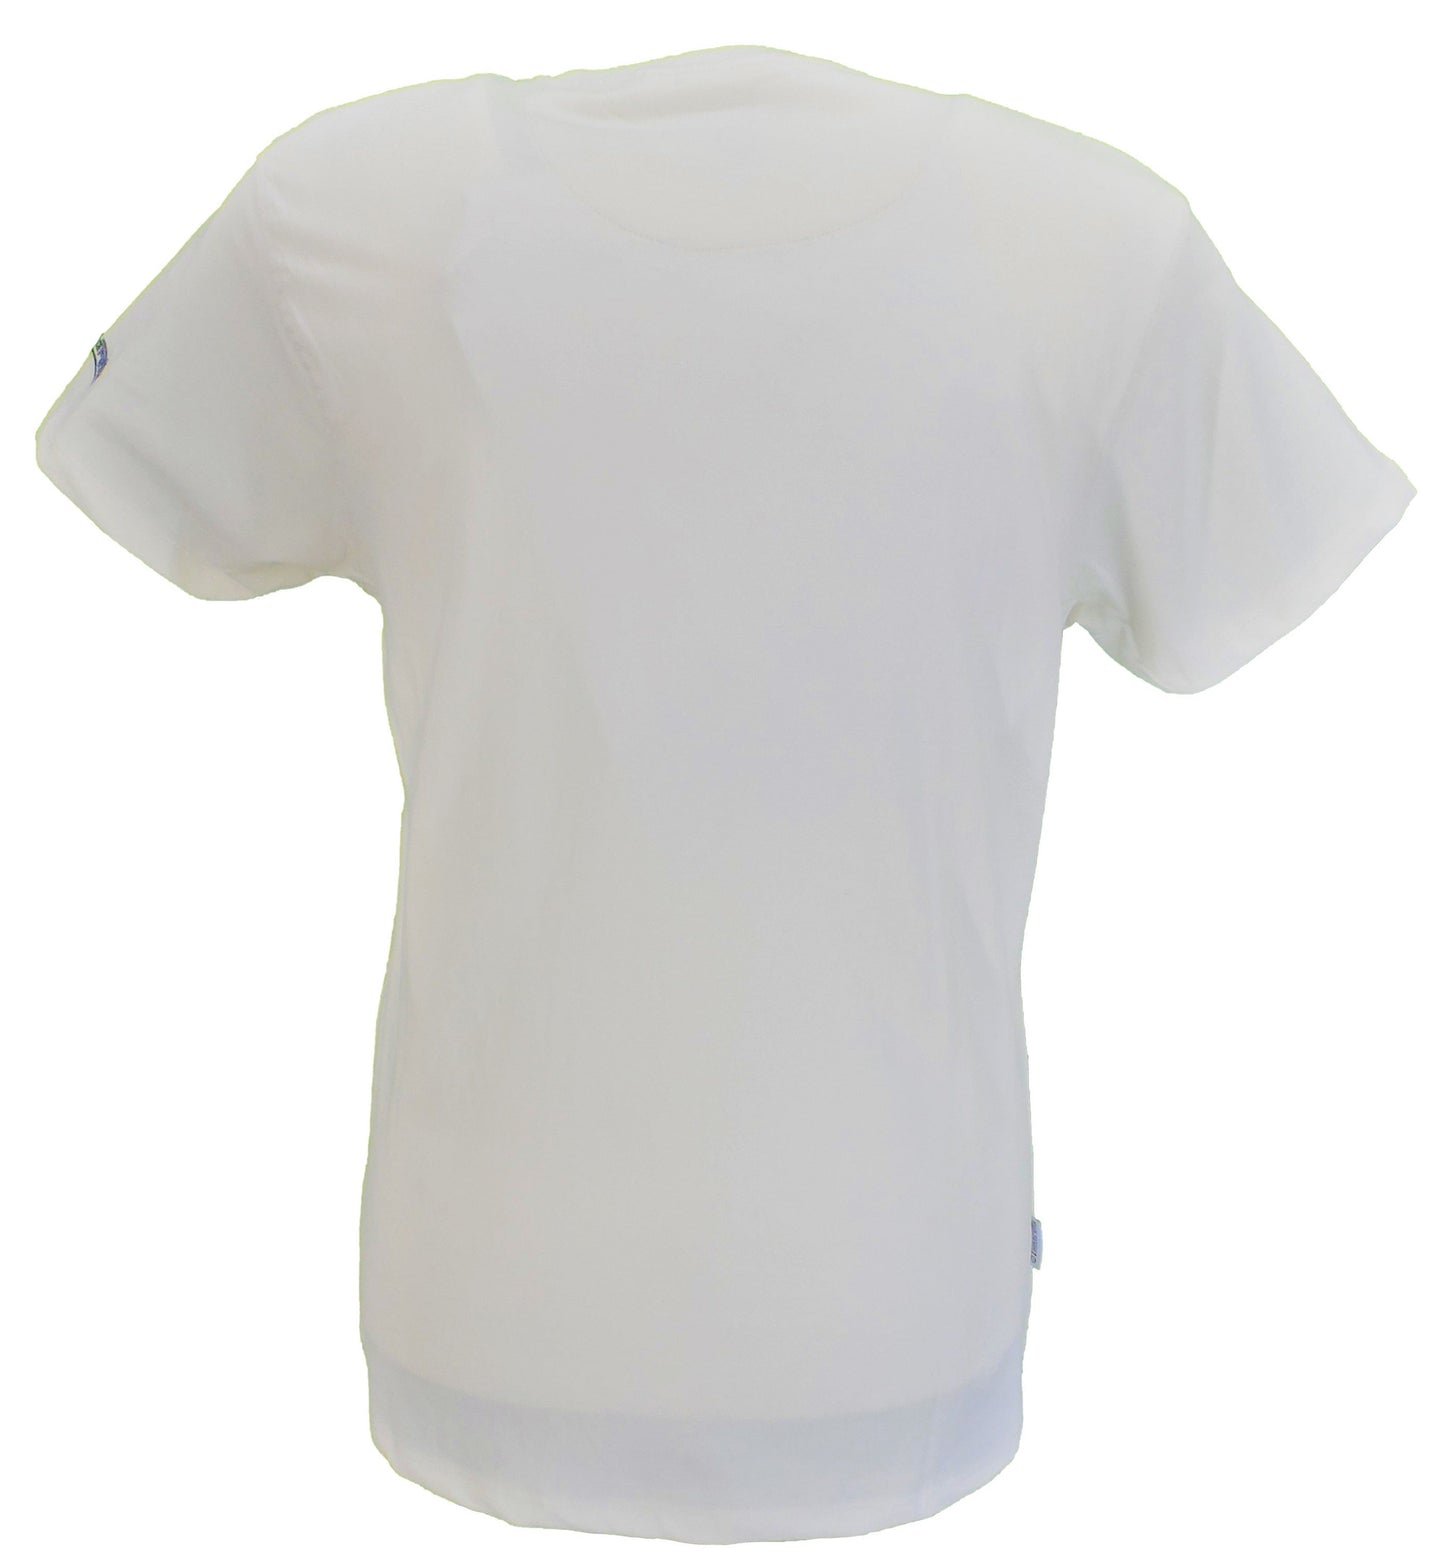 Lambretta t-shirt blanc avec logo rétro fondu pour homme